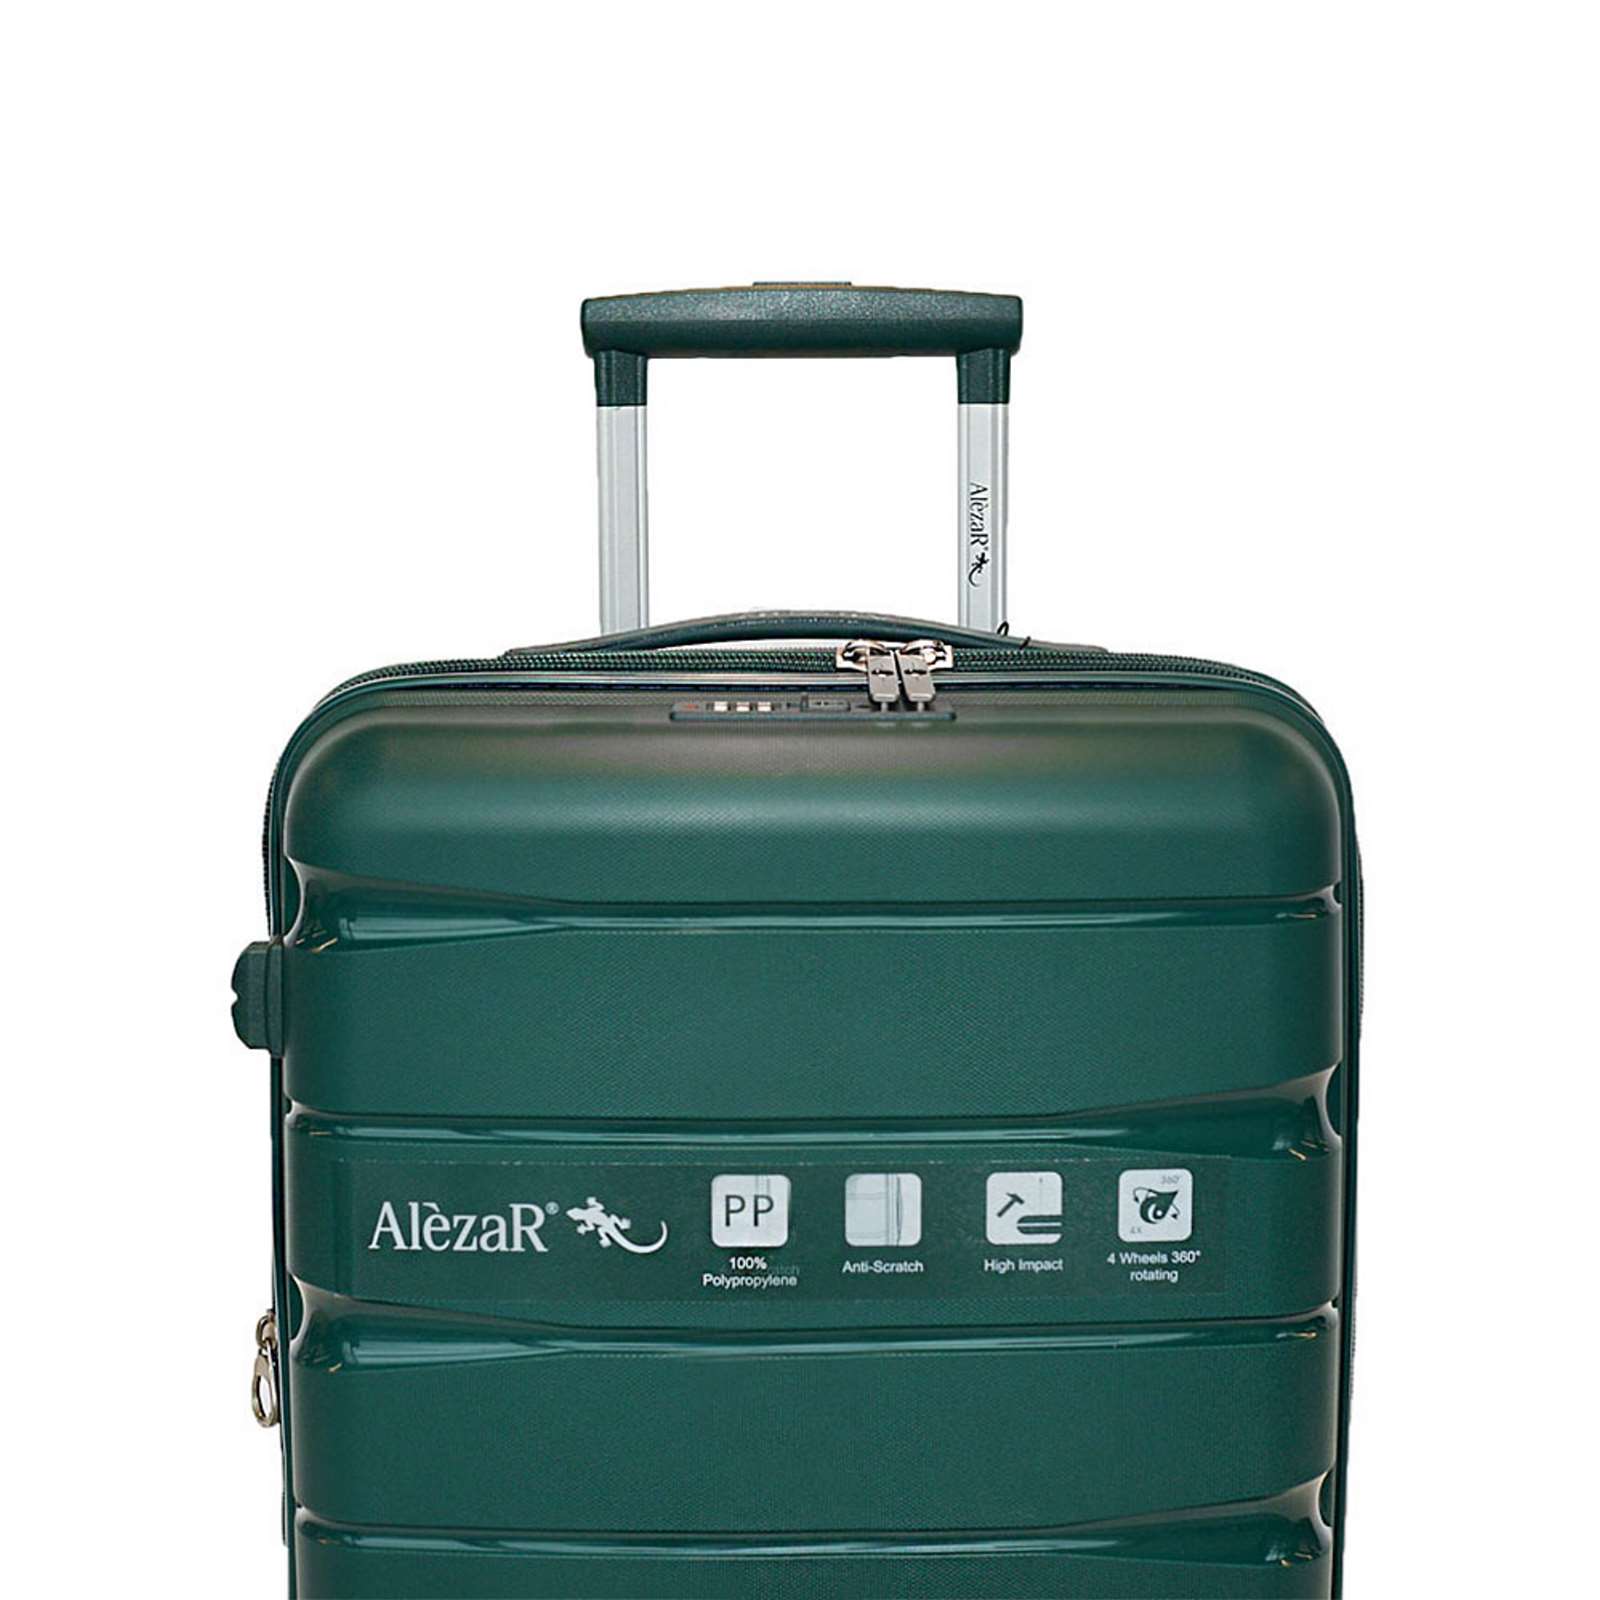 Alezar Lux Digitex matkalaukkusetti vihreä 4-renk ( 20